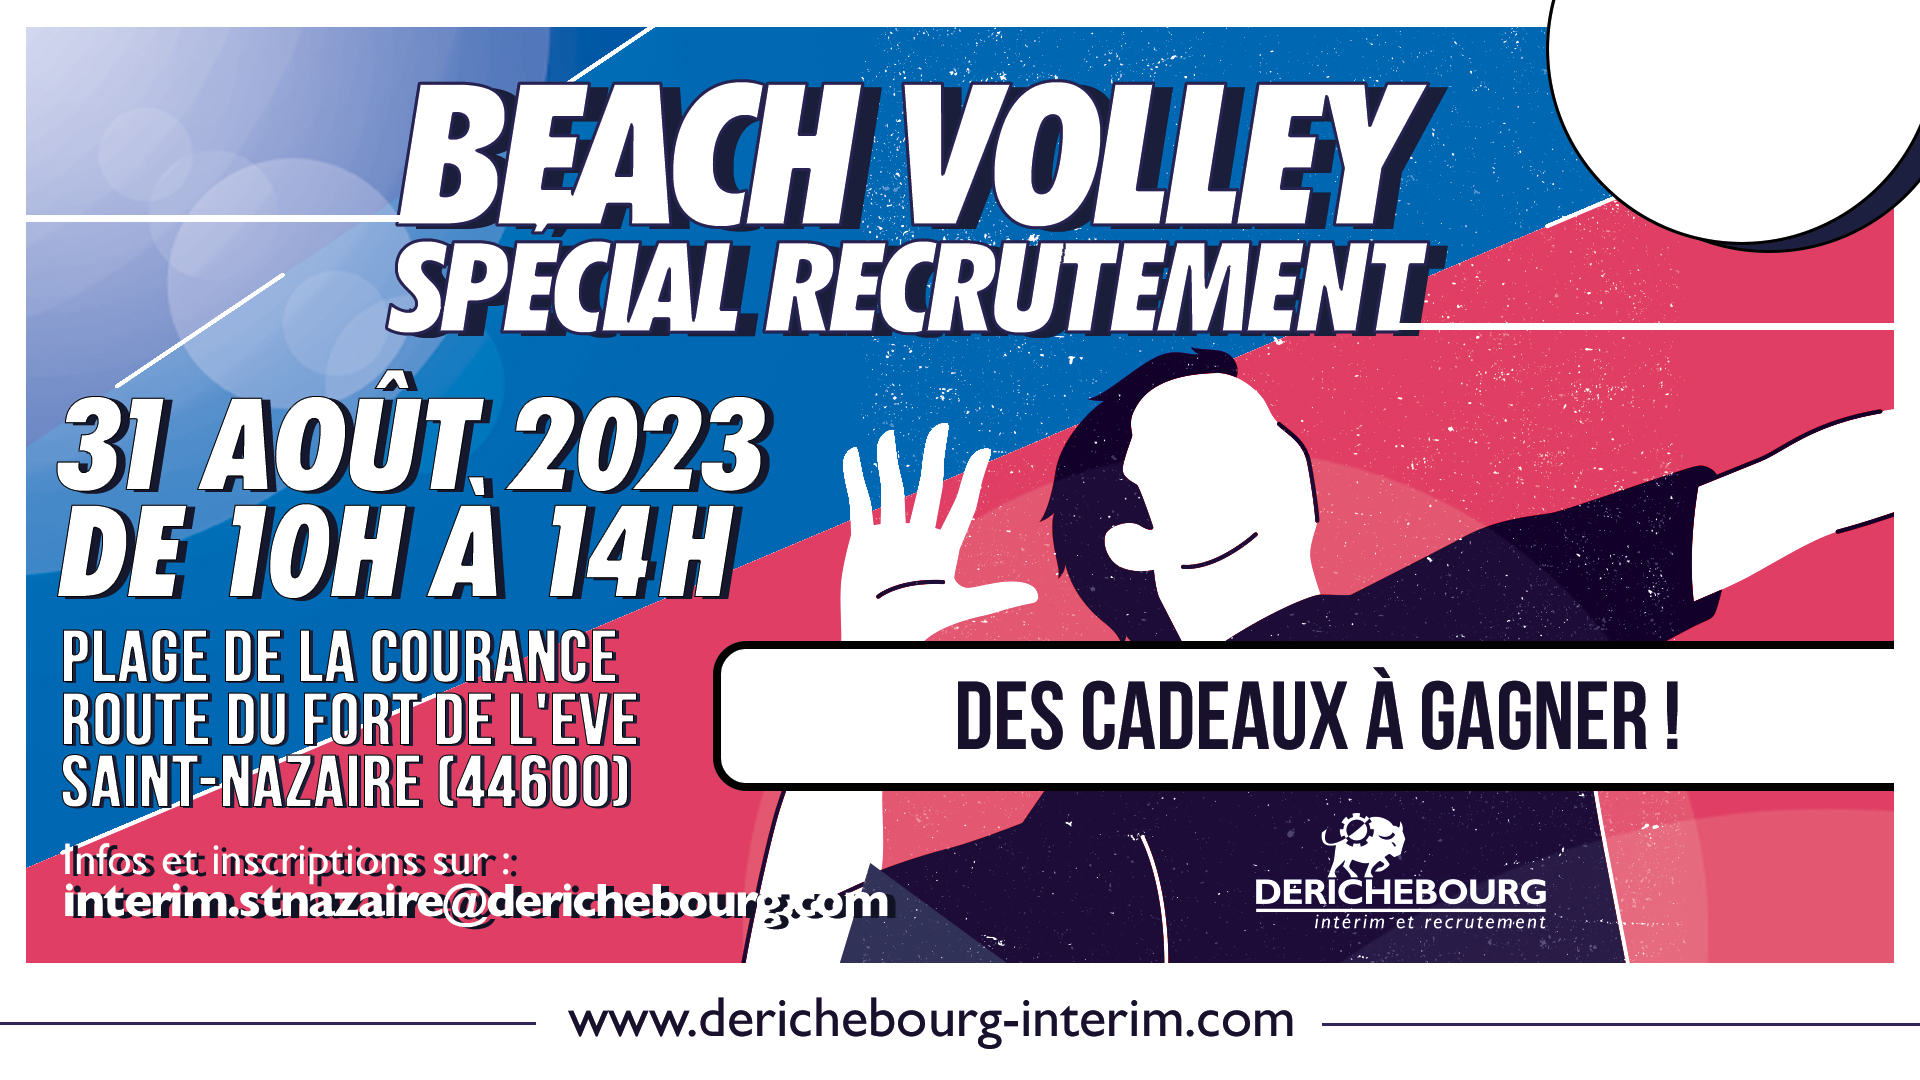 Participez à un Beach Volley spécial recrutement à Saint-Nazaire ! 